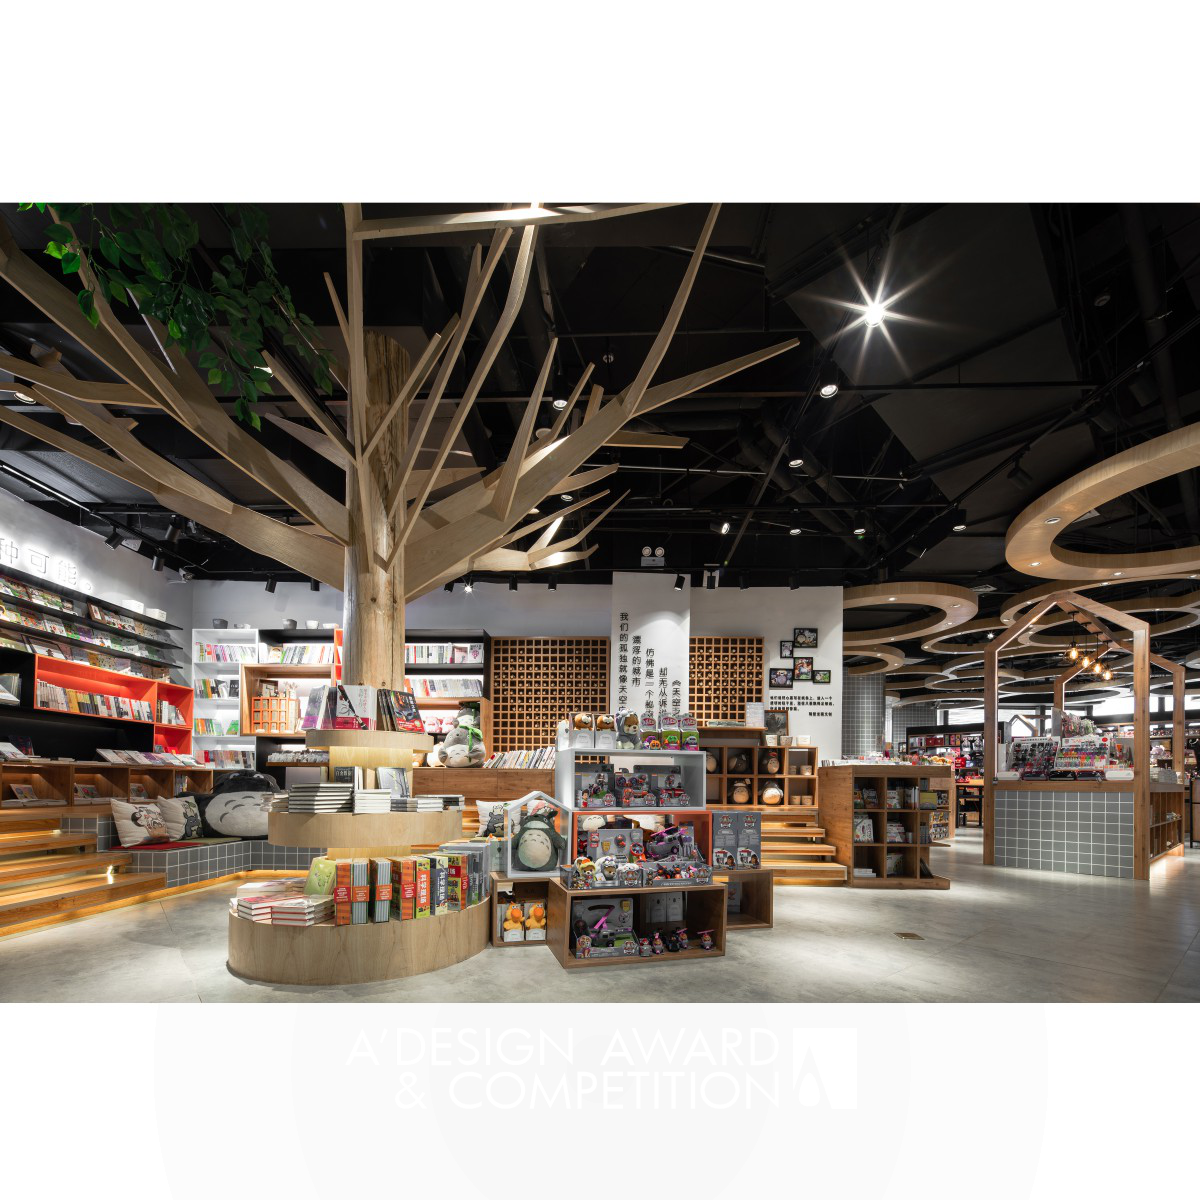 Hao Fan & Longhui Lee Retail Space